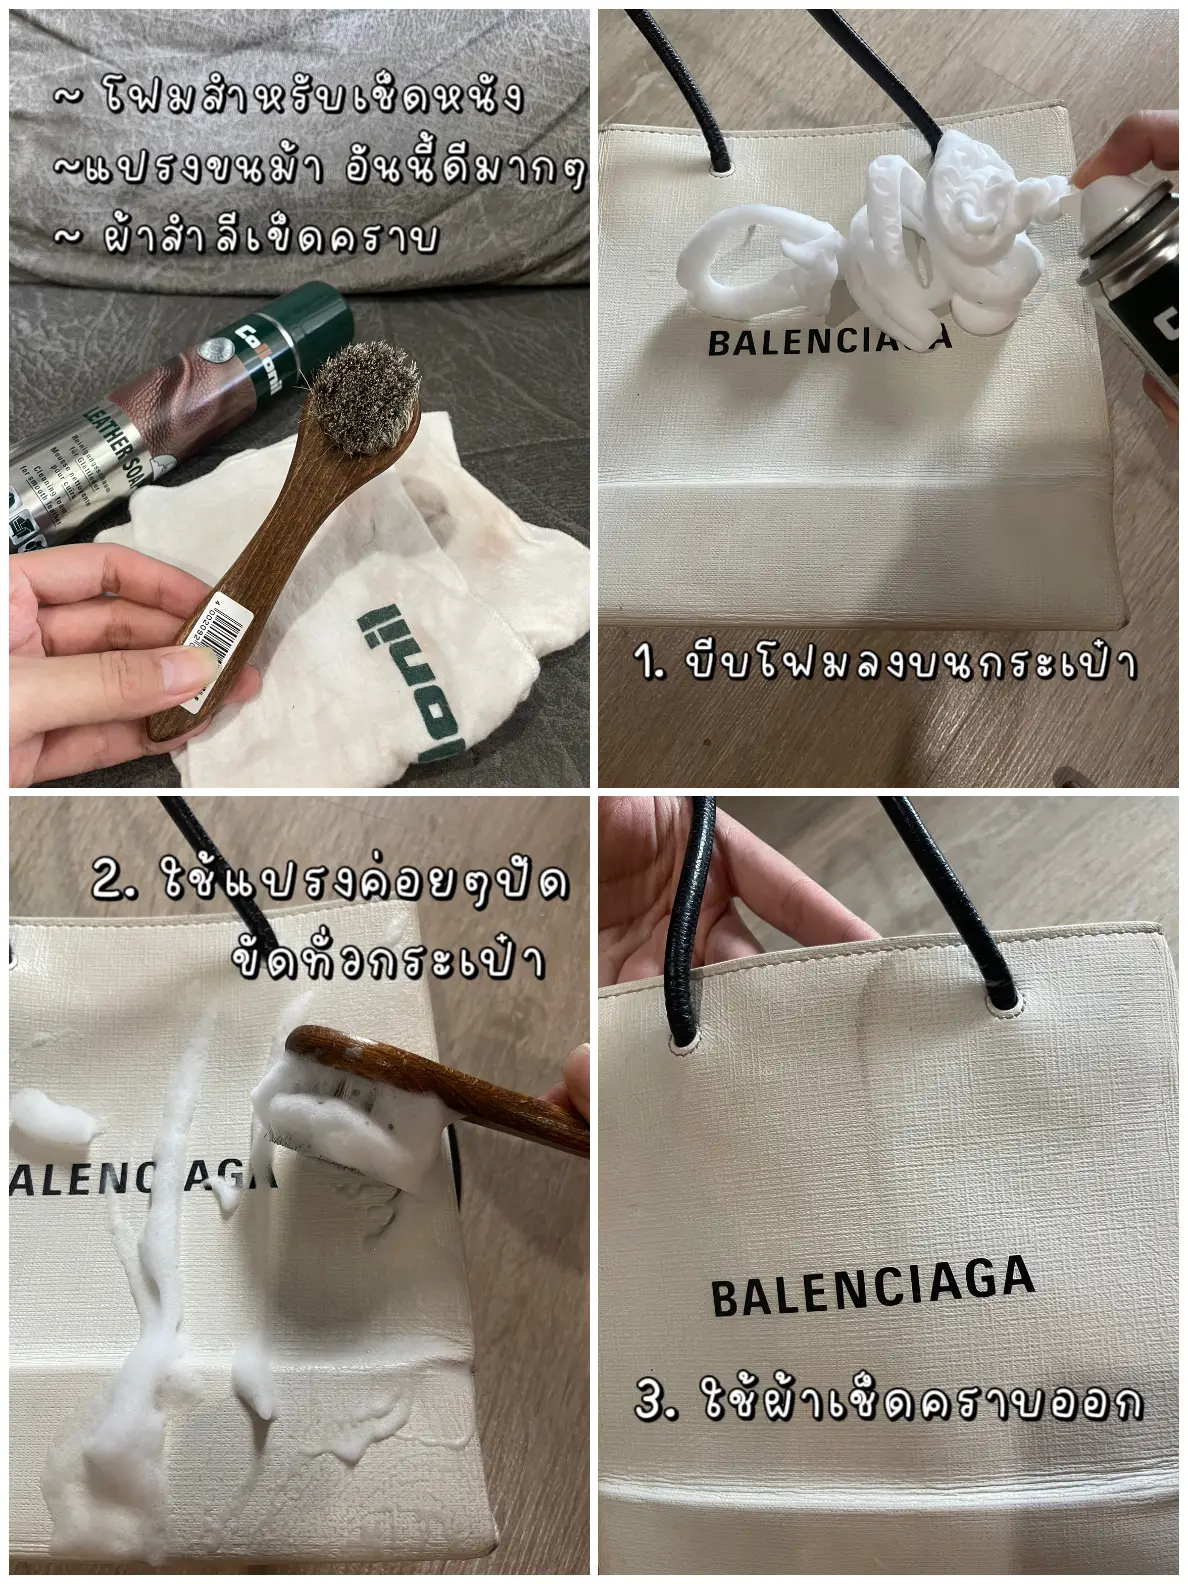 Balenciaga x Hello Kitty Bags Drop In Singapore, Get A Piece Now